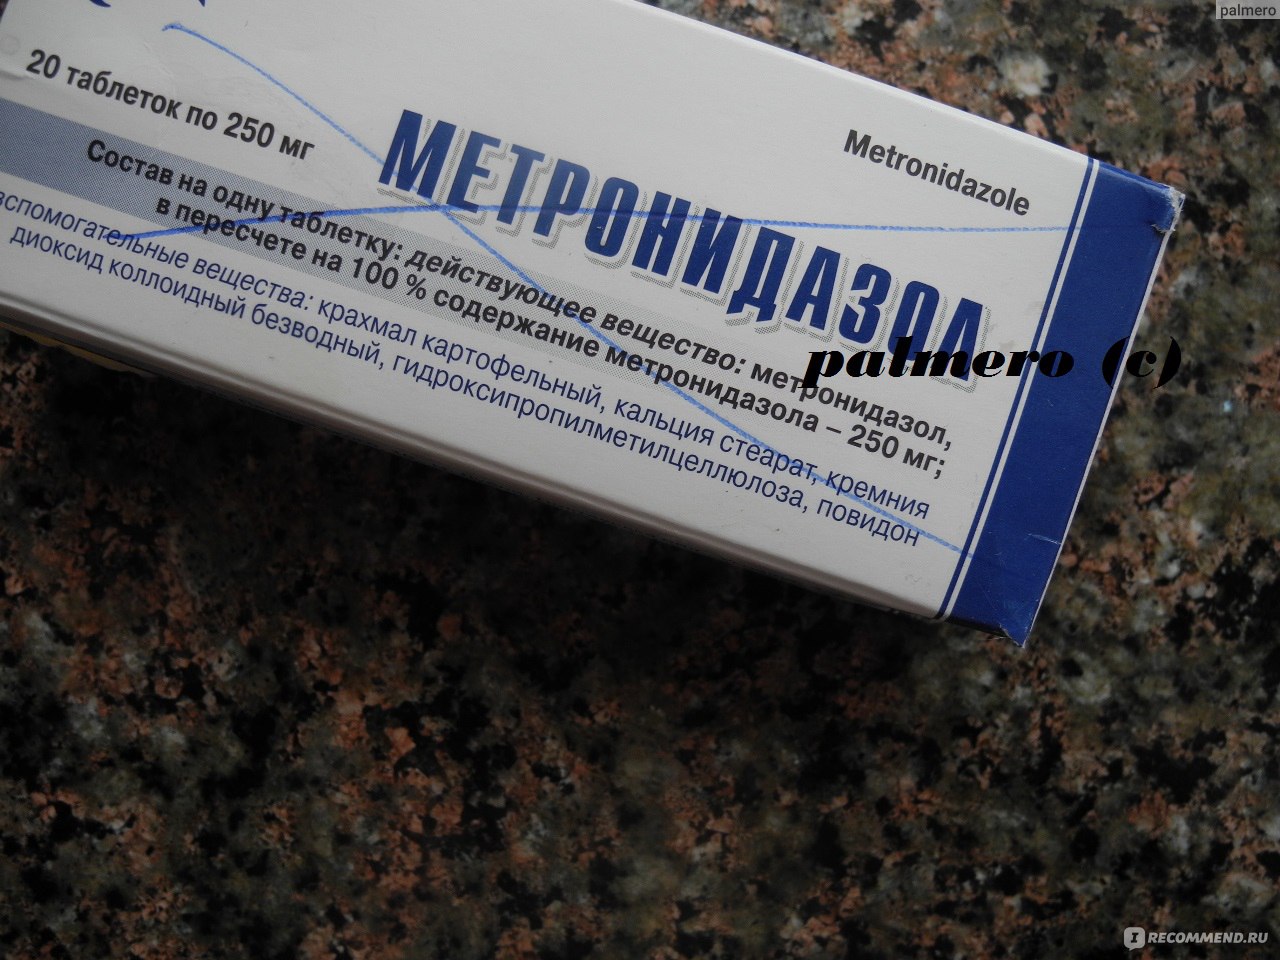 Лечение Легких Метронидазолом